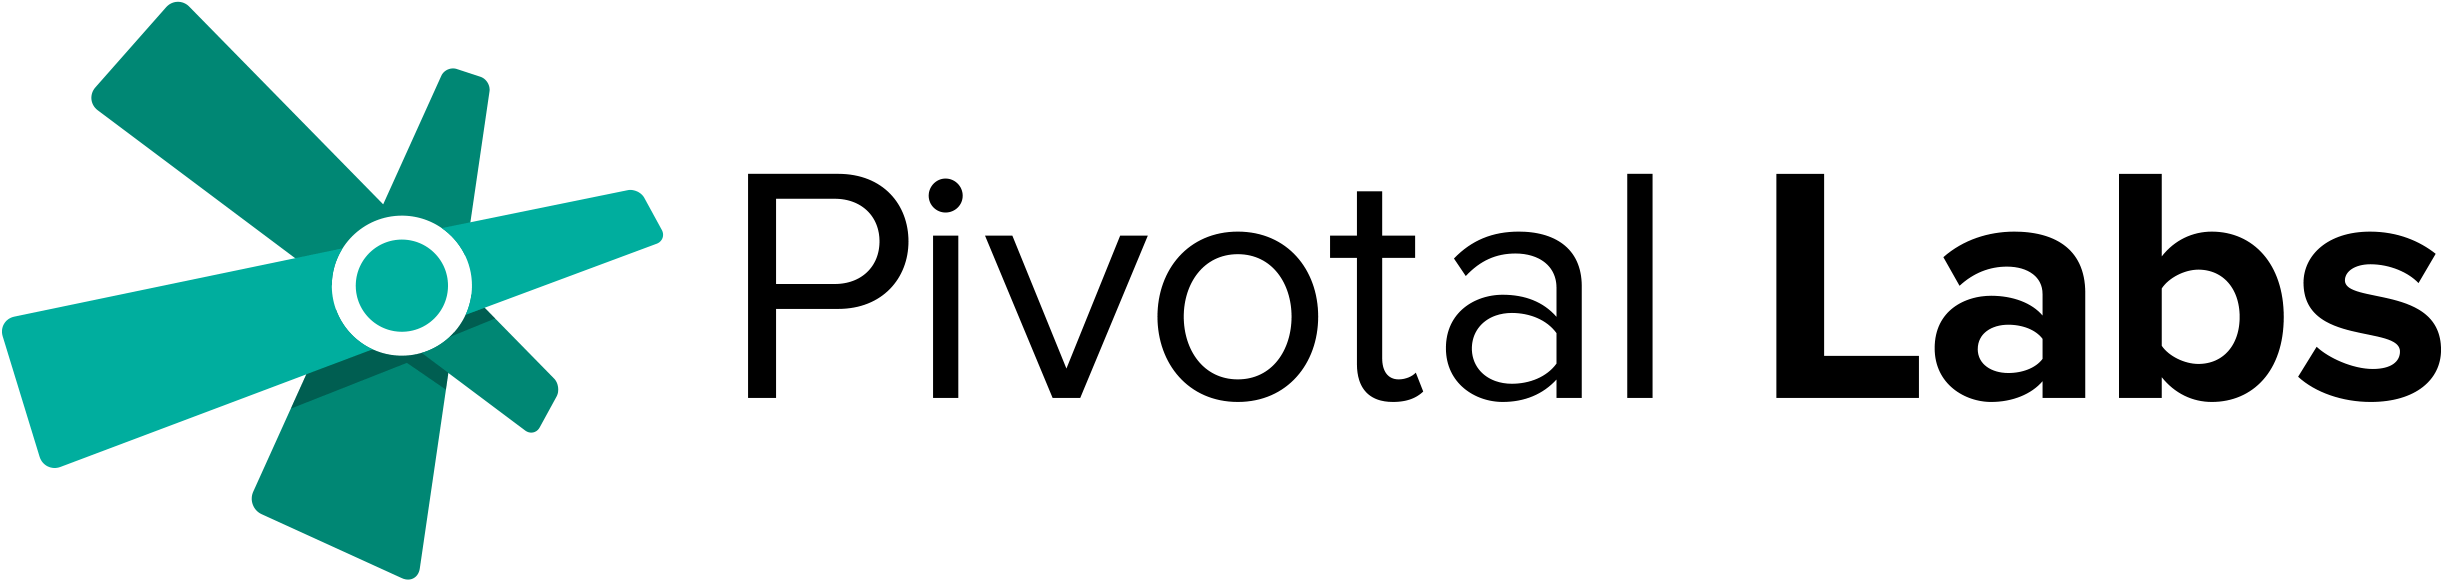 Pivotal Logo - Pivotal Labs